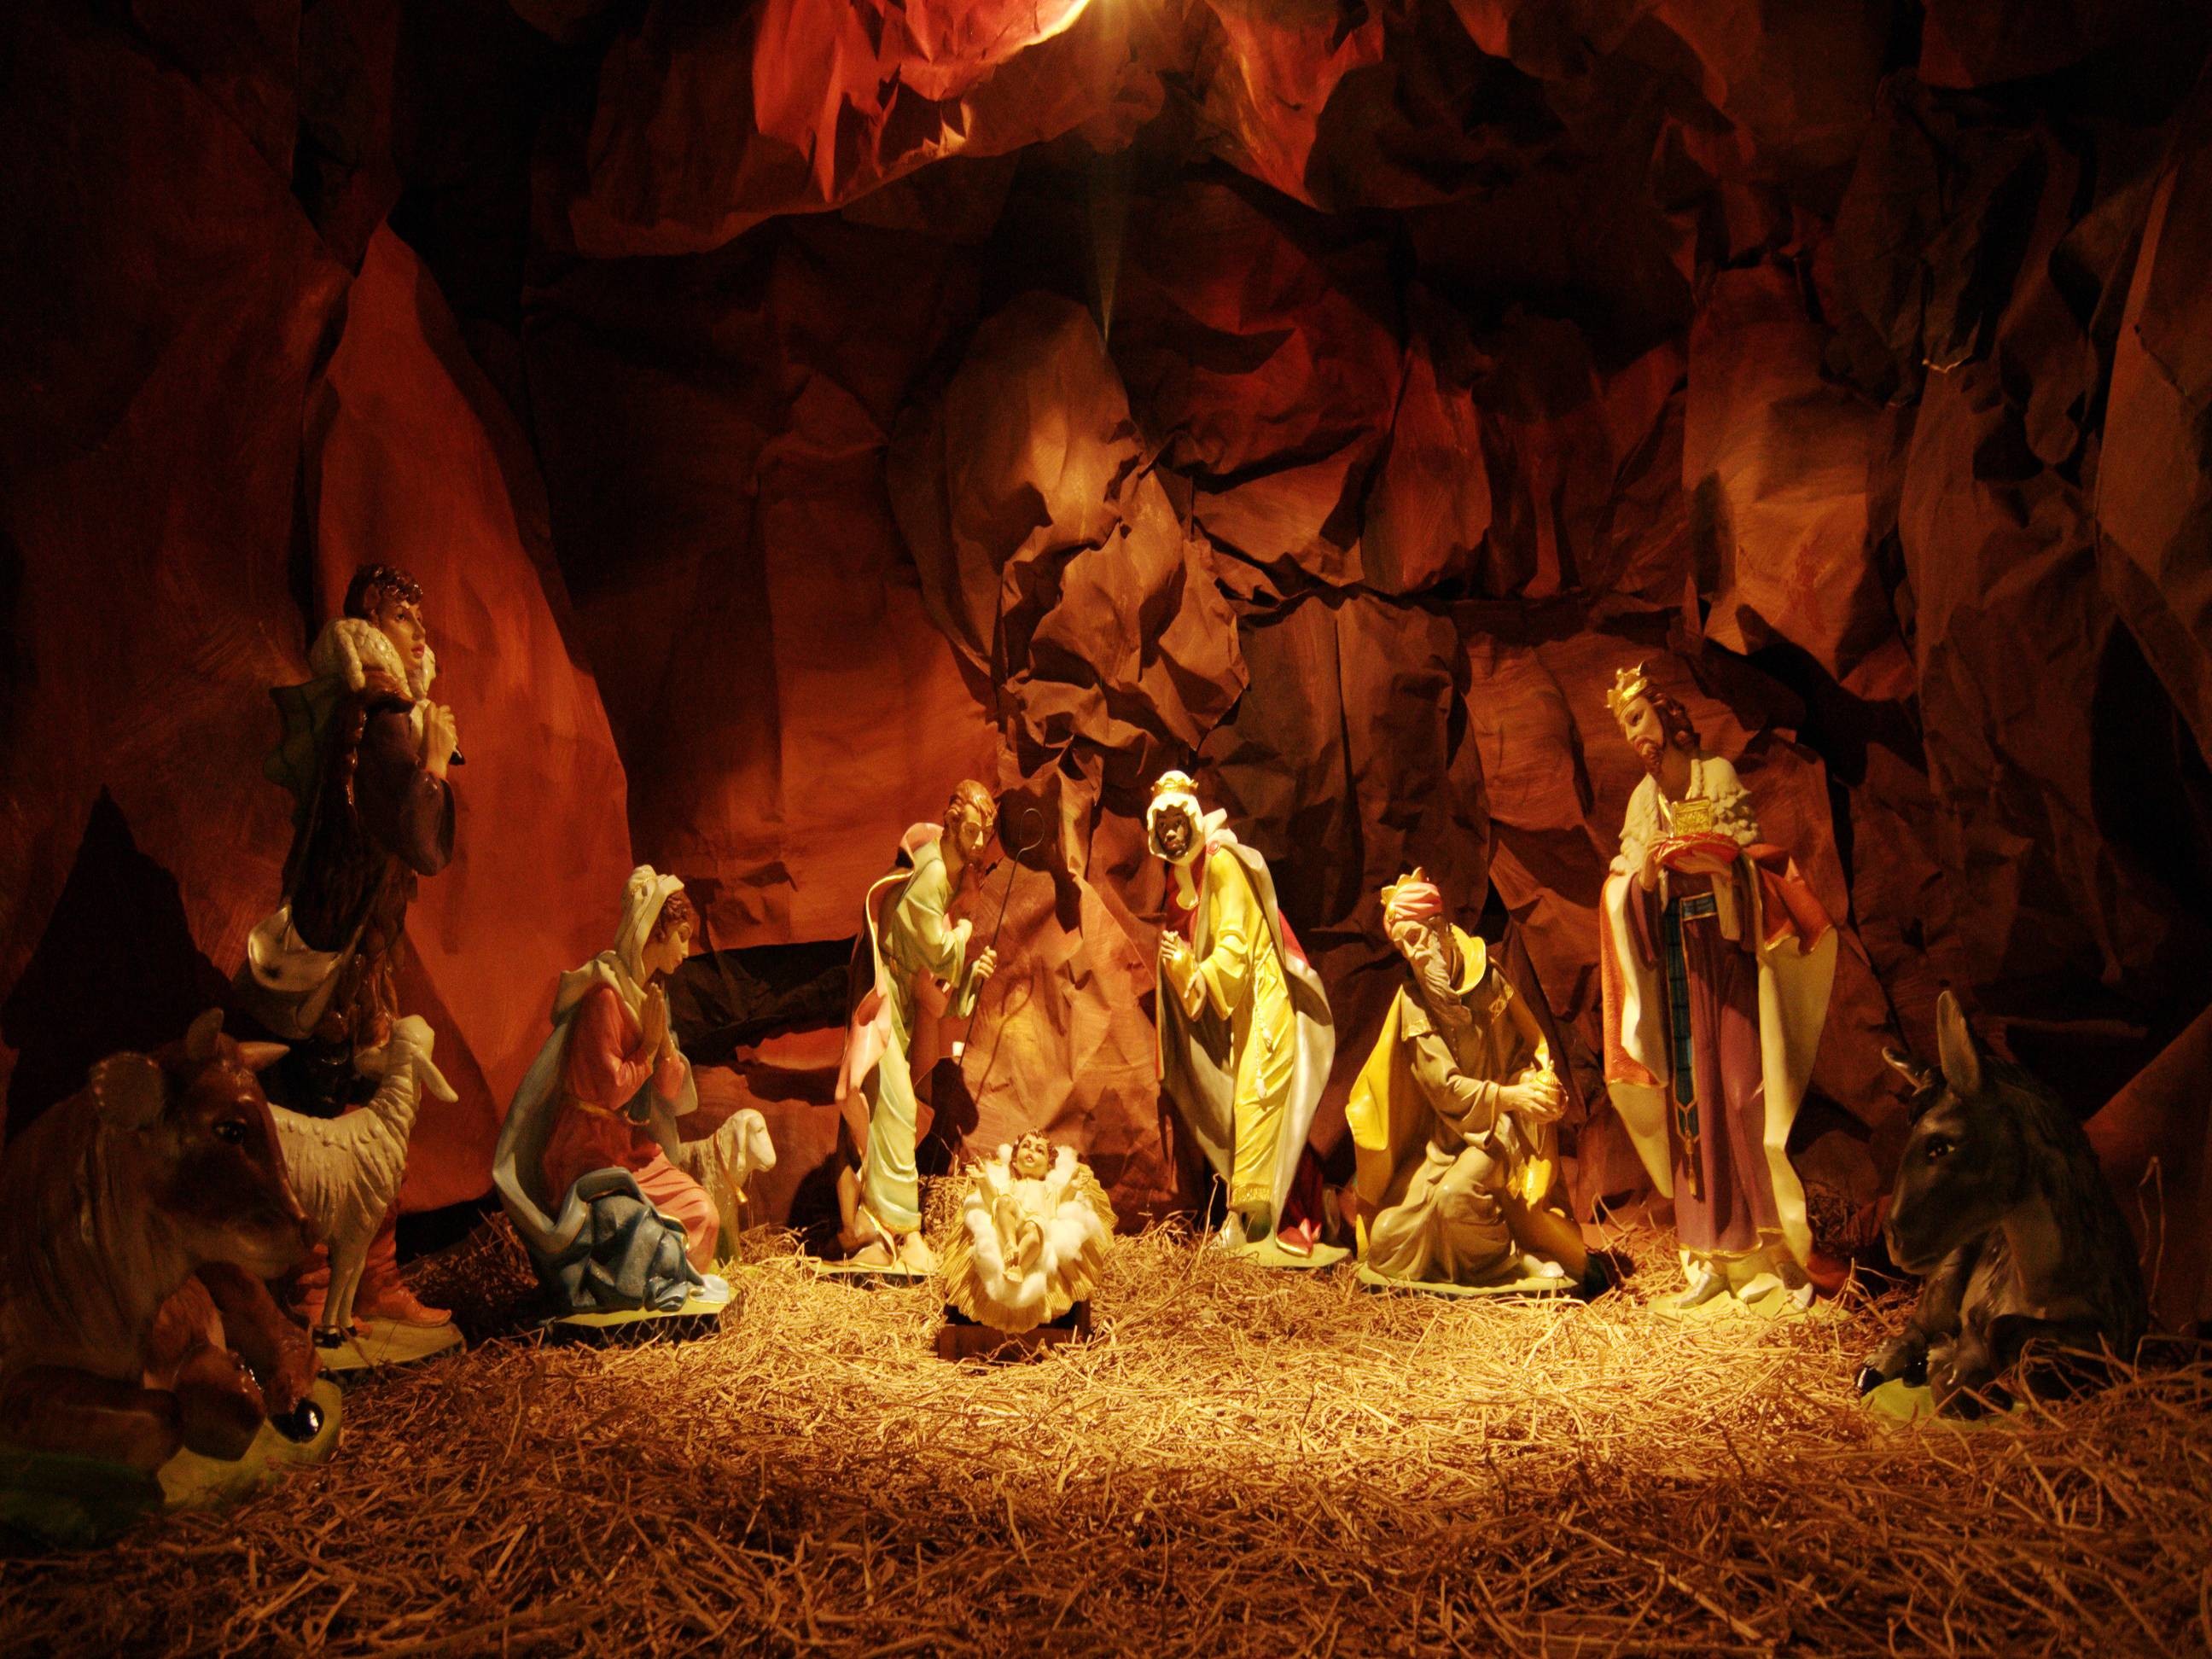 2592x1944 download nativity scene wallpaper - www.